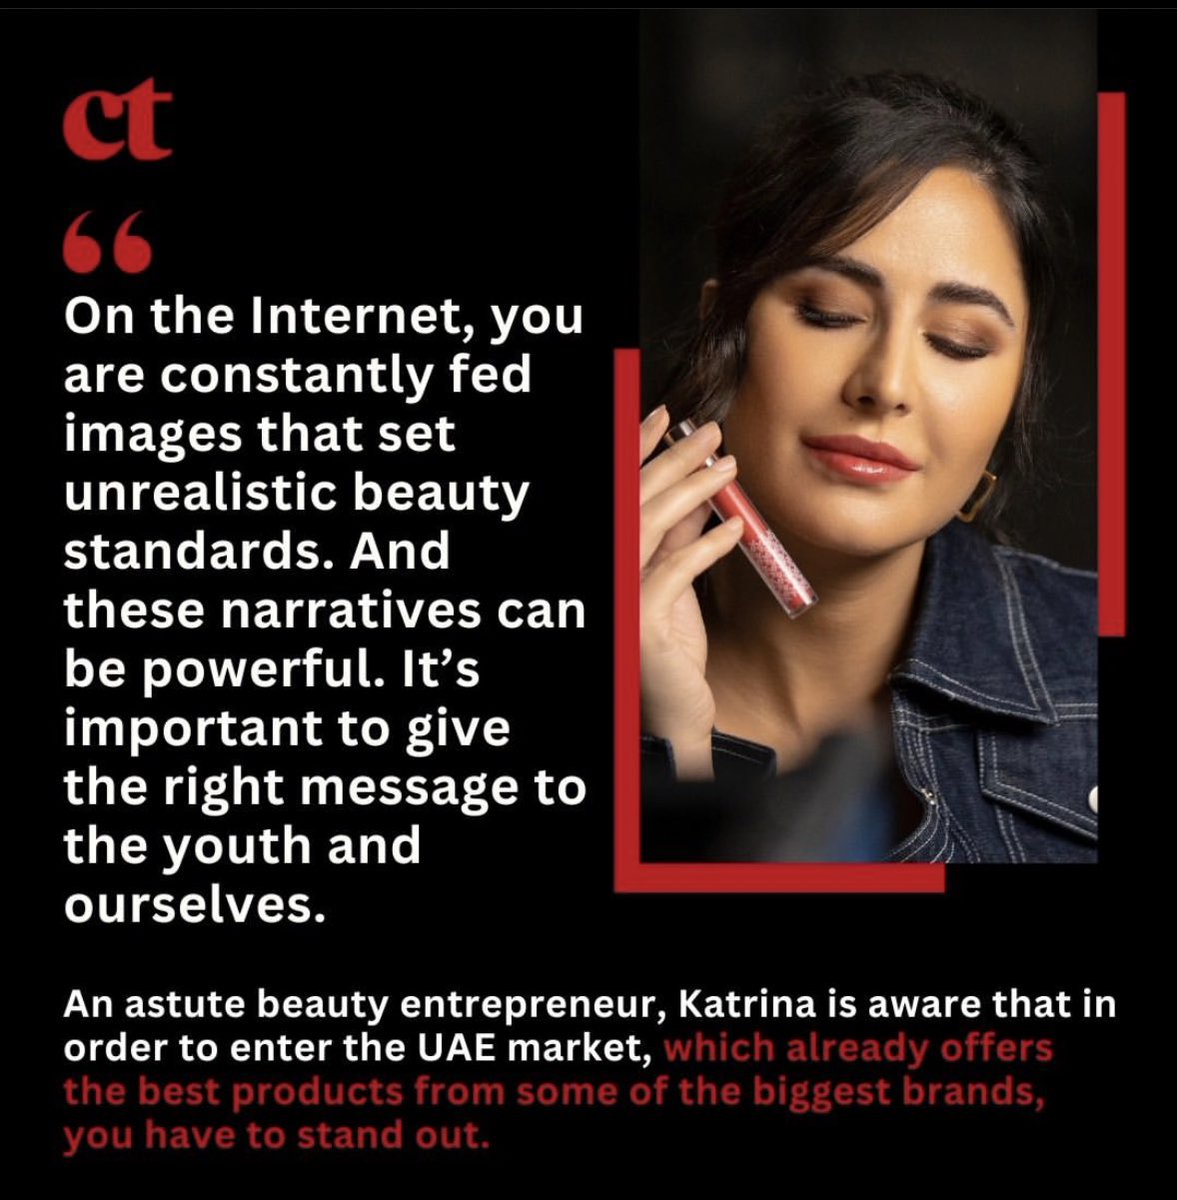 Congratulations Katrina on Kay Beauty in UAE! So proud. 👏🏻💖 Hoping for opening in Malaysia someday. 🙌🏻❤️ #KatrinaKaif #KayByKatrina #KayBeauty